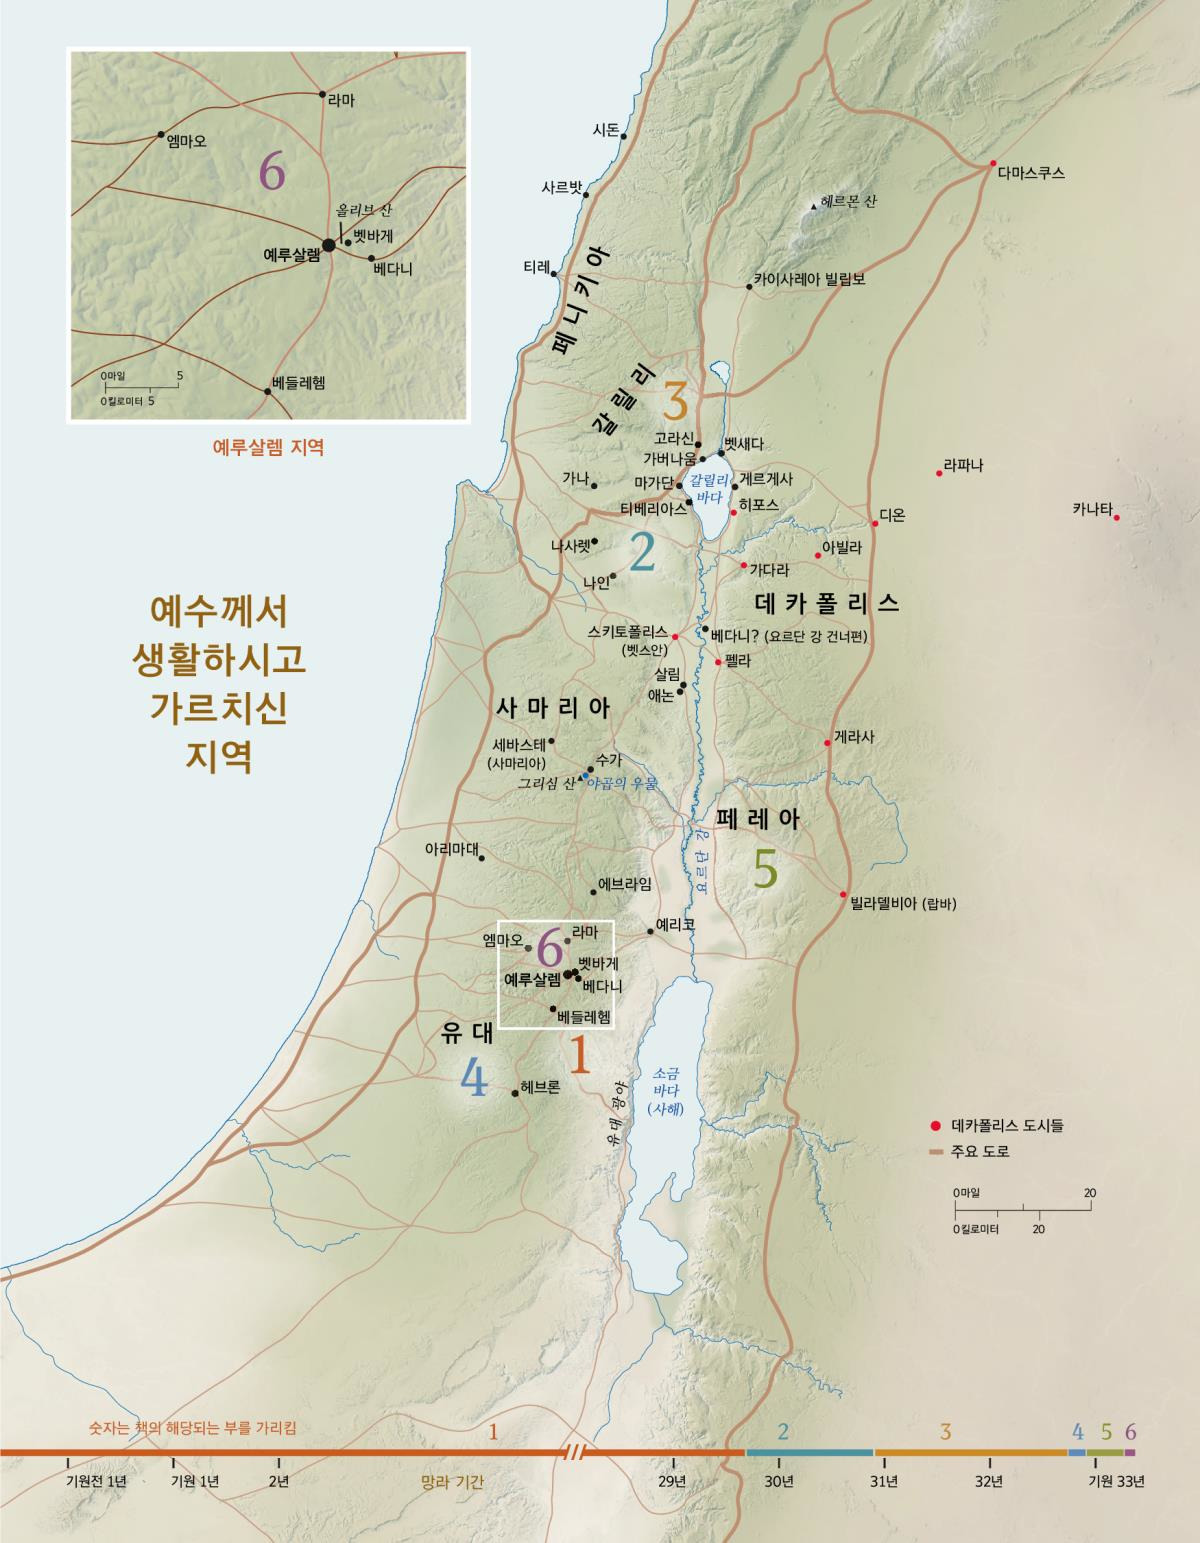 유대에서 예루살렘 성전은 가까웠나요? : 지식iN